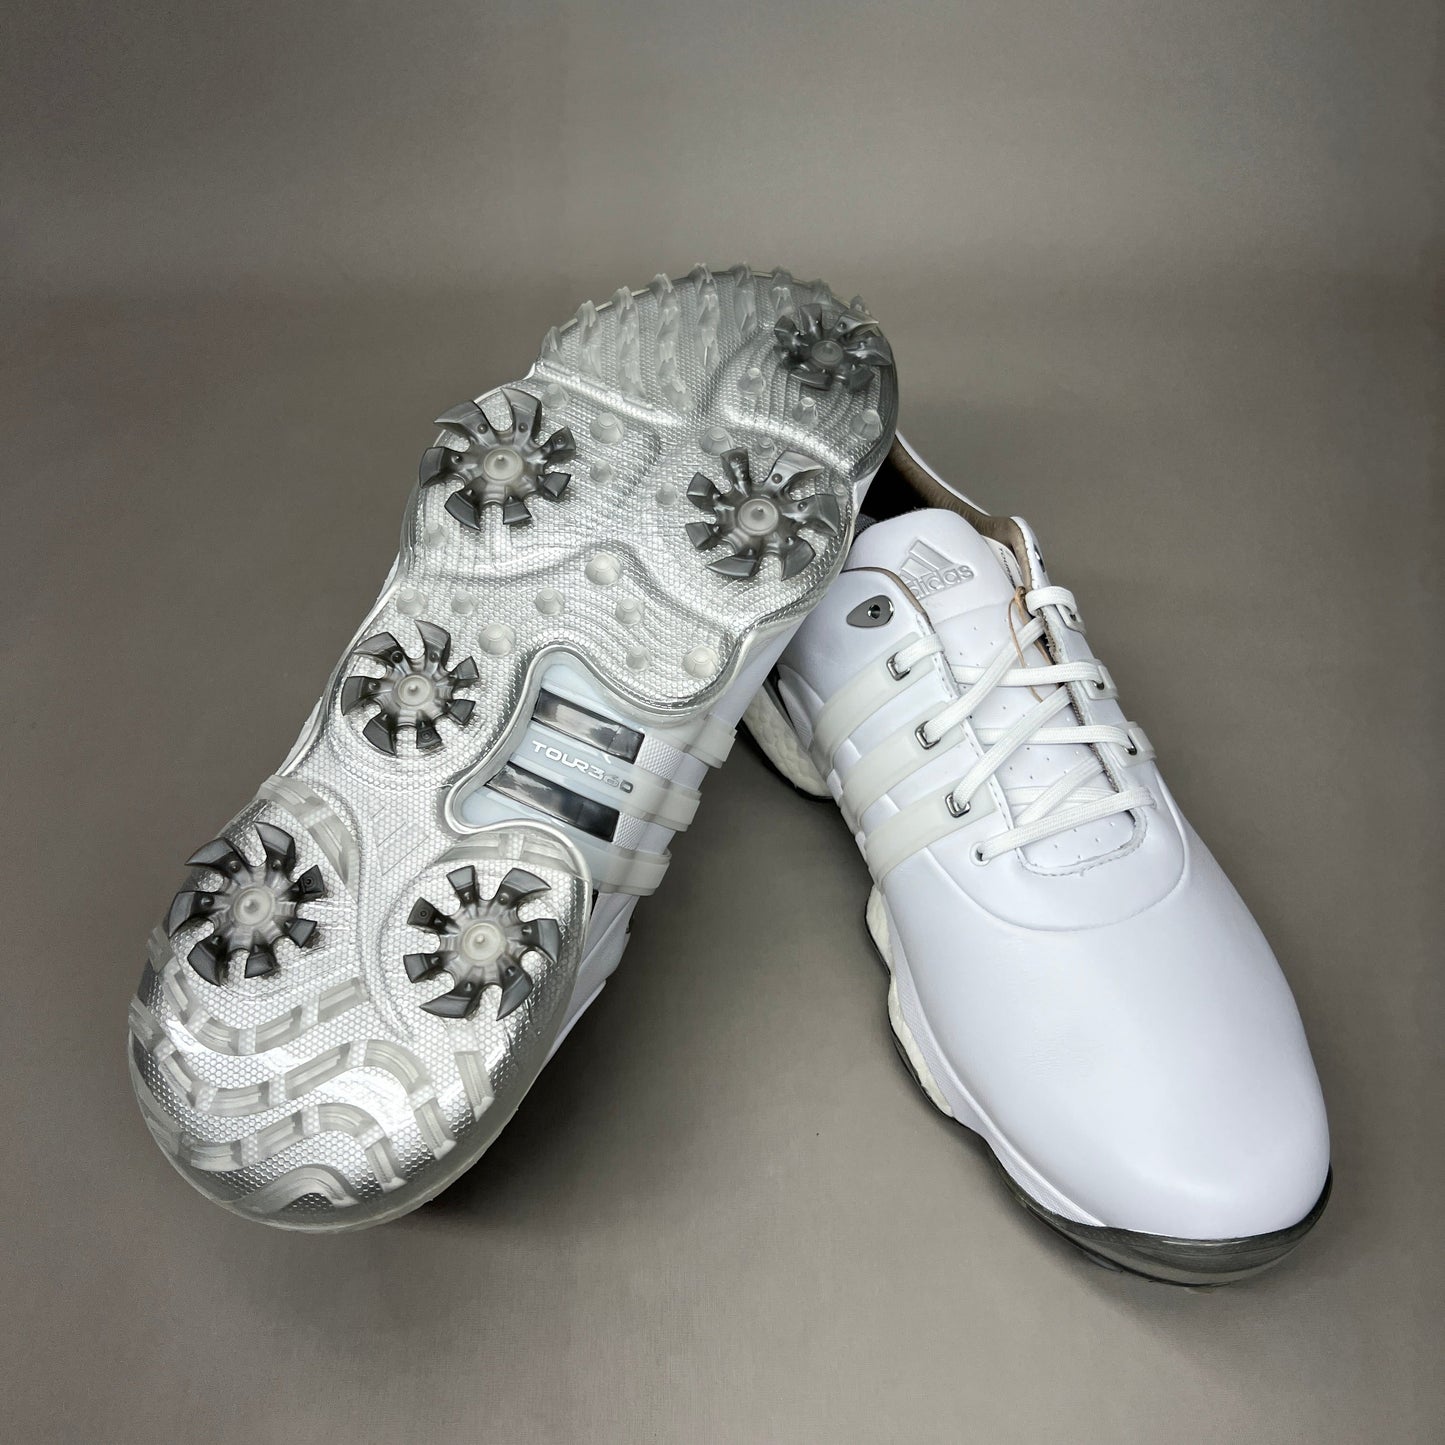 ADIDAS Golf Shoes TOUR360 22 Leather Men's Sz 15 White / Silver GV7245 (New)